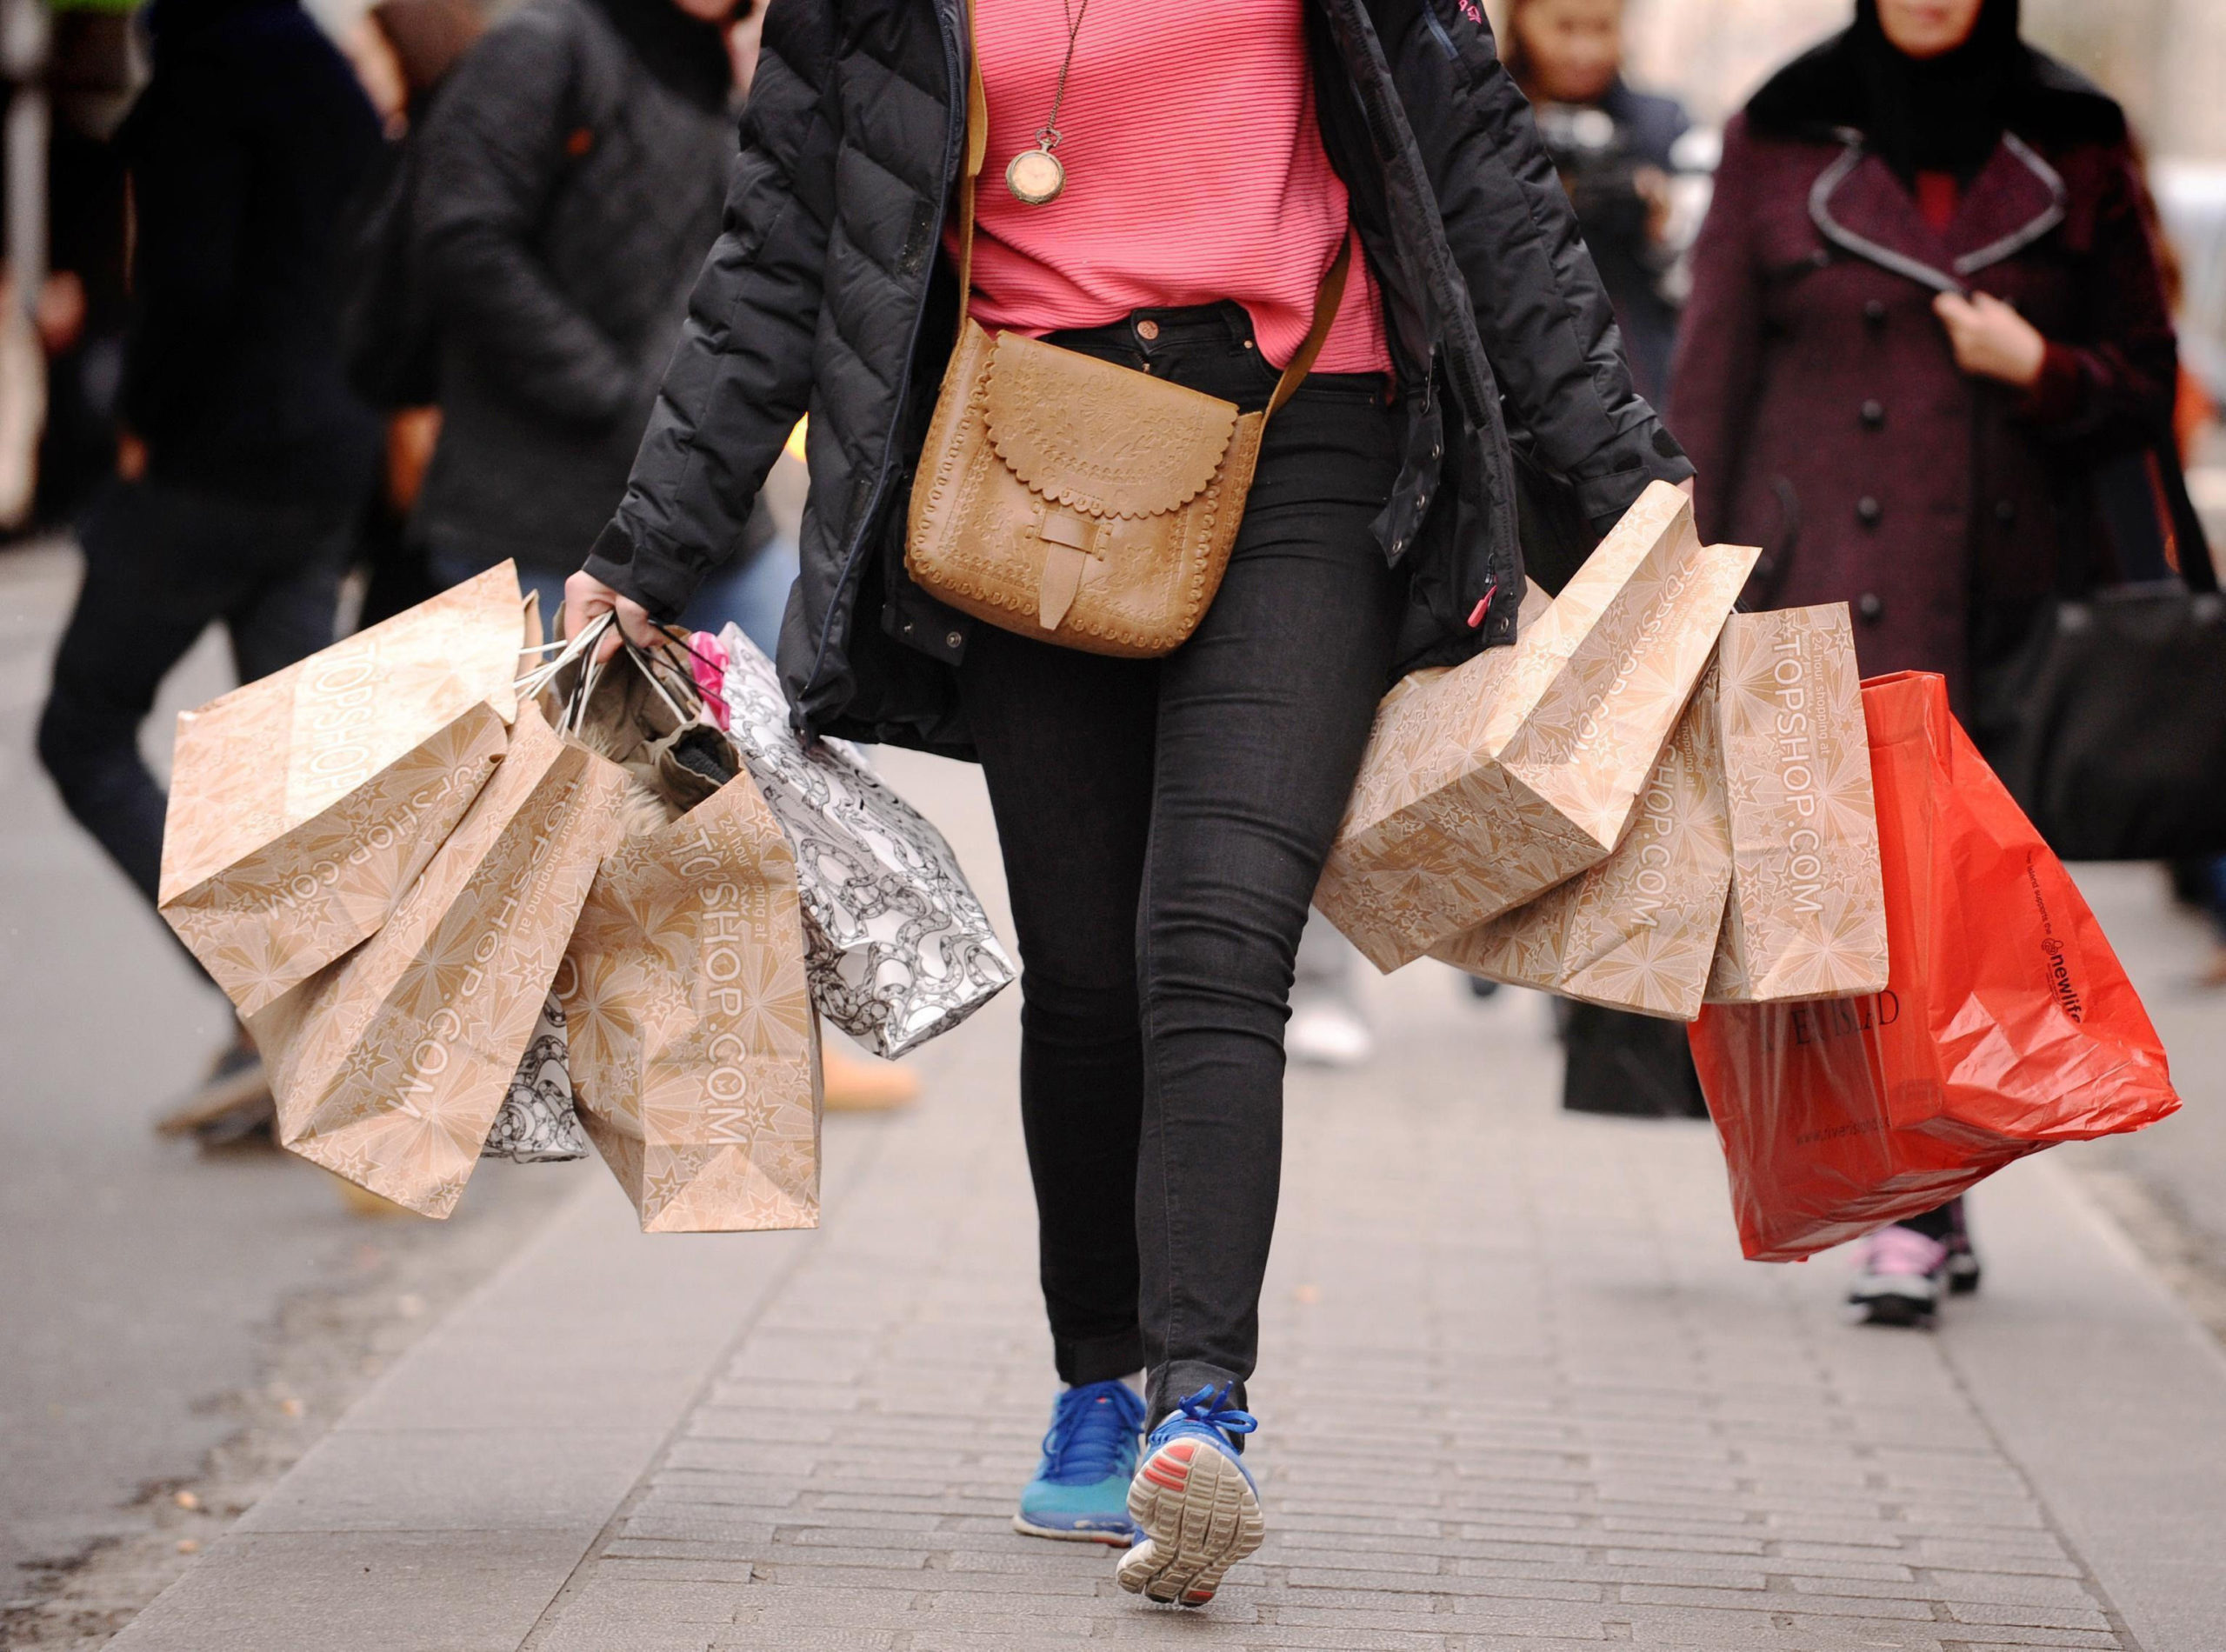 A shopper carries bags.